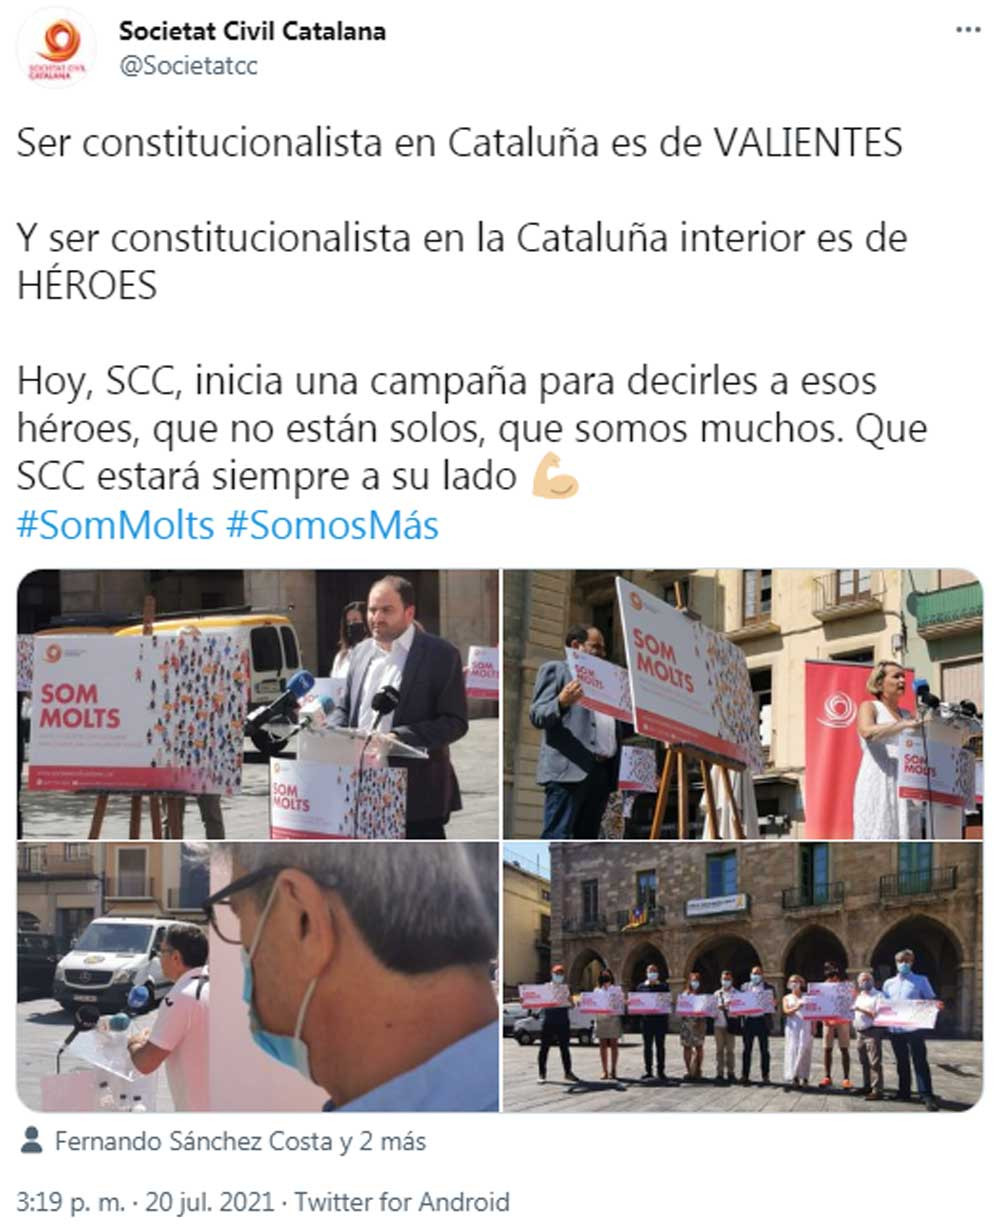 Societat Civil Catalana, presentando la campaña Som molts en Manresa / SOCIETAT CIVIL CATALANA